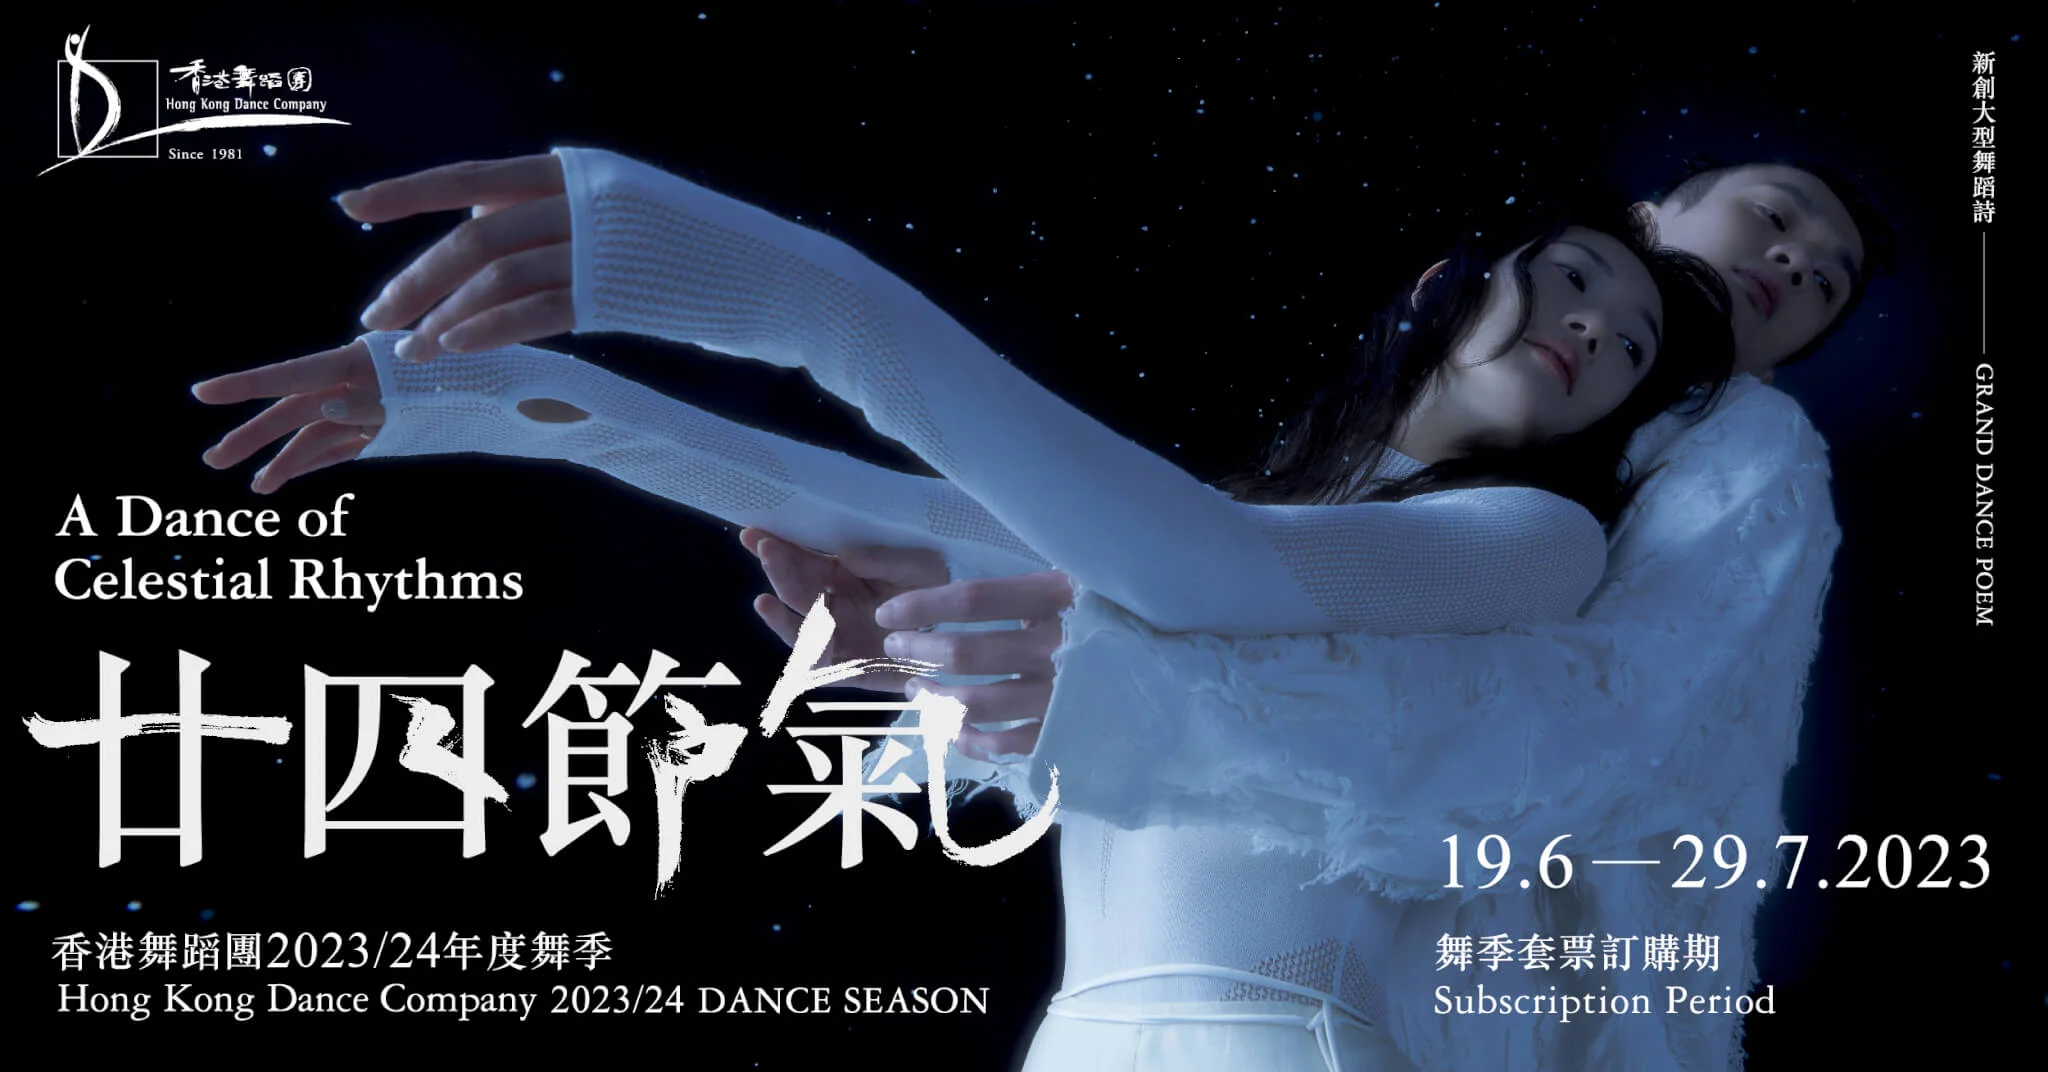 新創大型舞蹈詩《廿四節氣》為香港舞蹈團23/24舞季之開季節目。